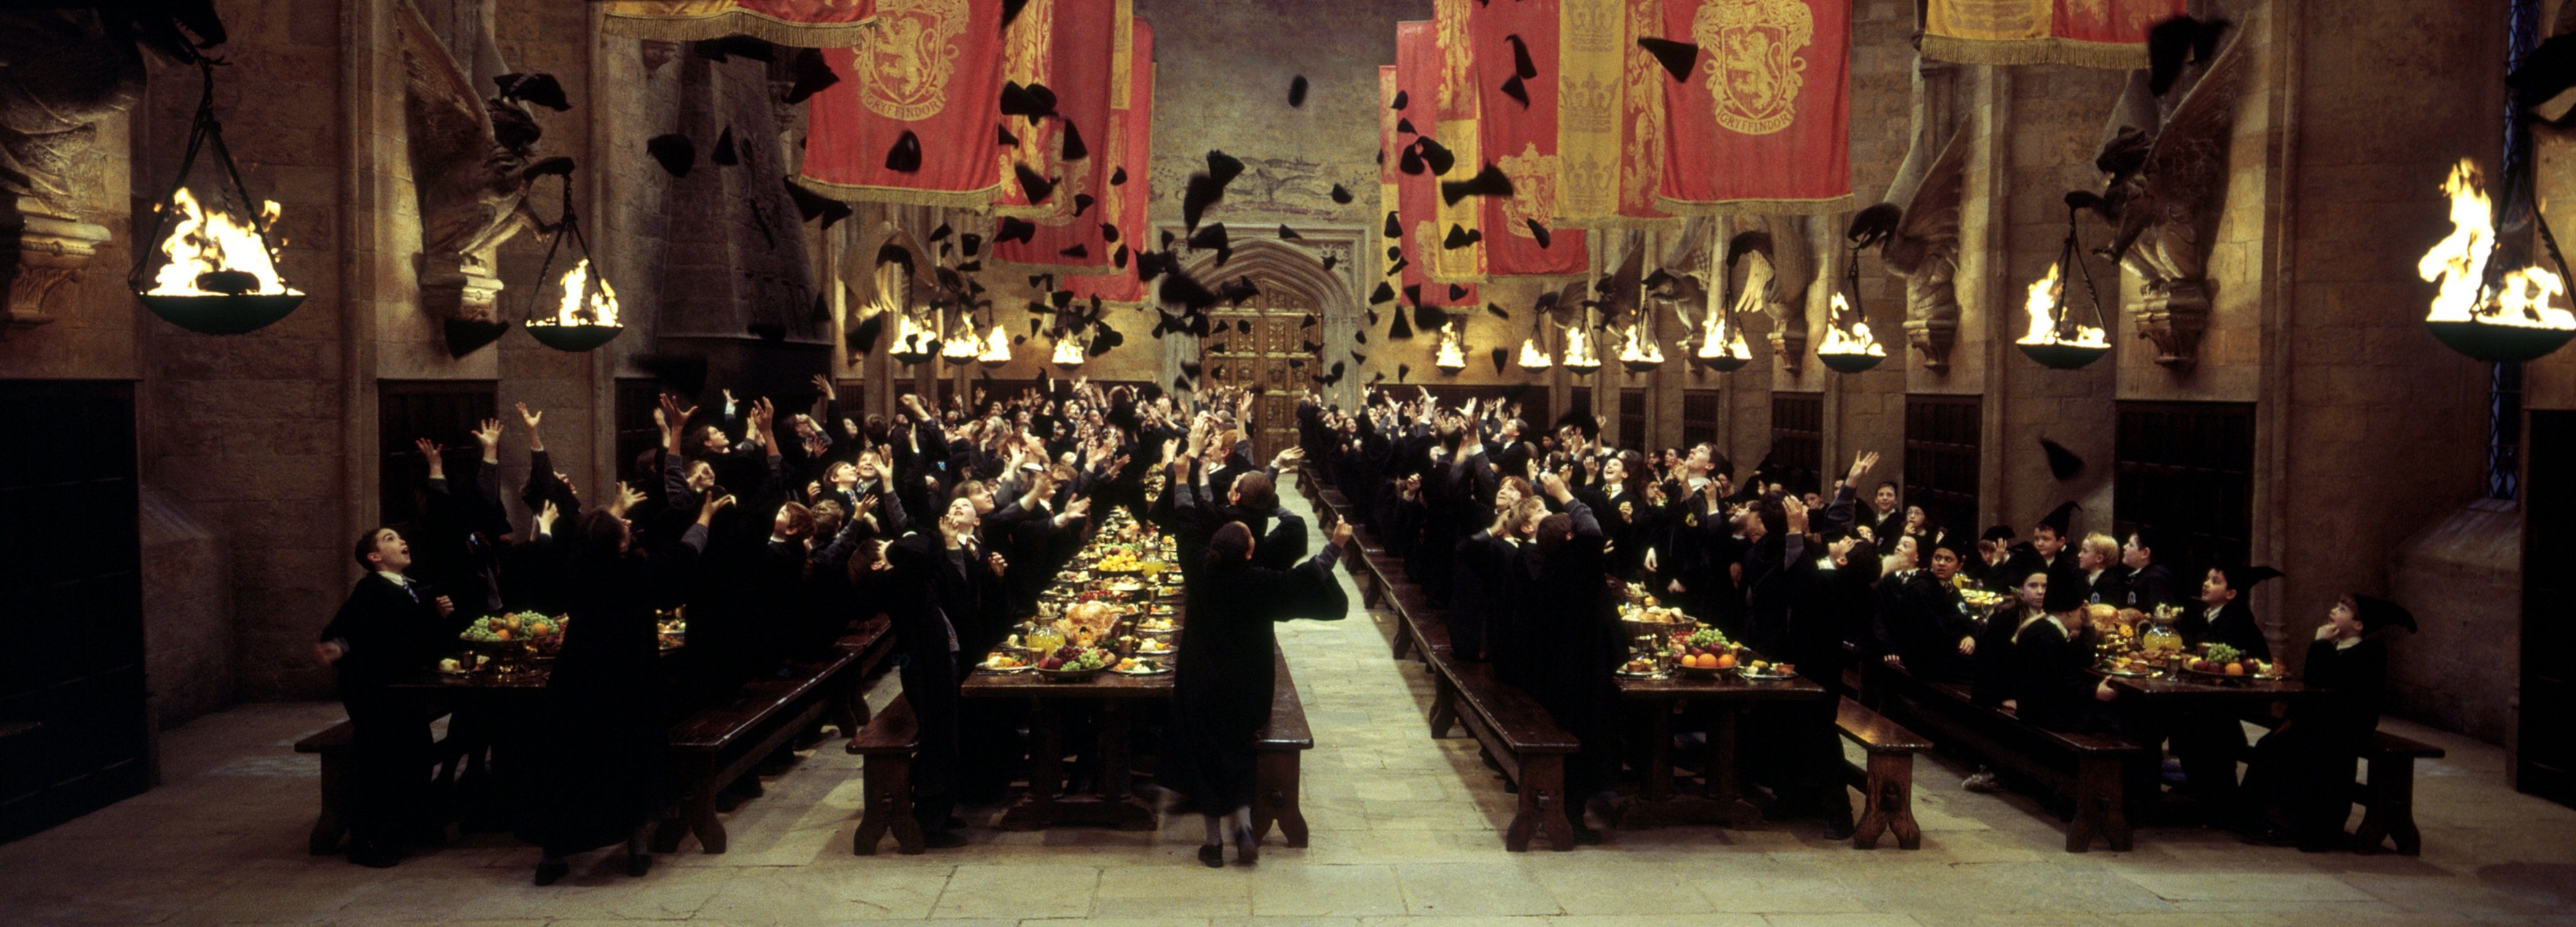 Celebra el día de tu casa de Hogwarts con estos personajes